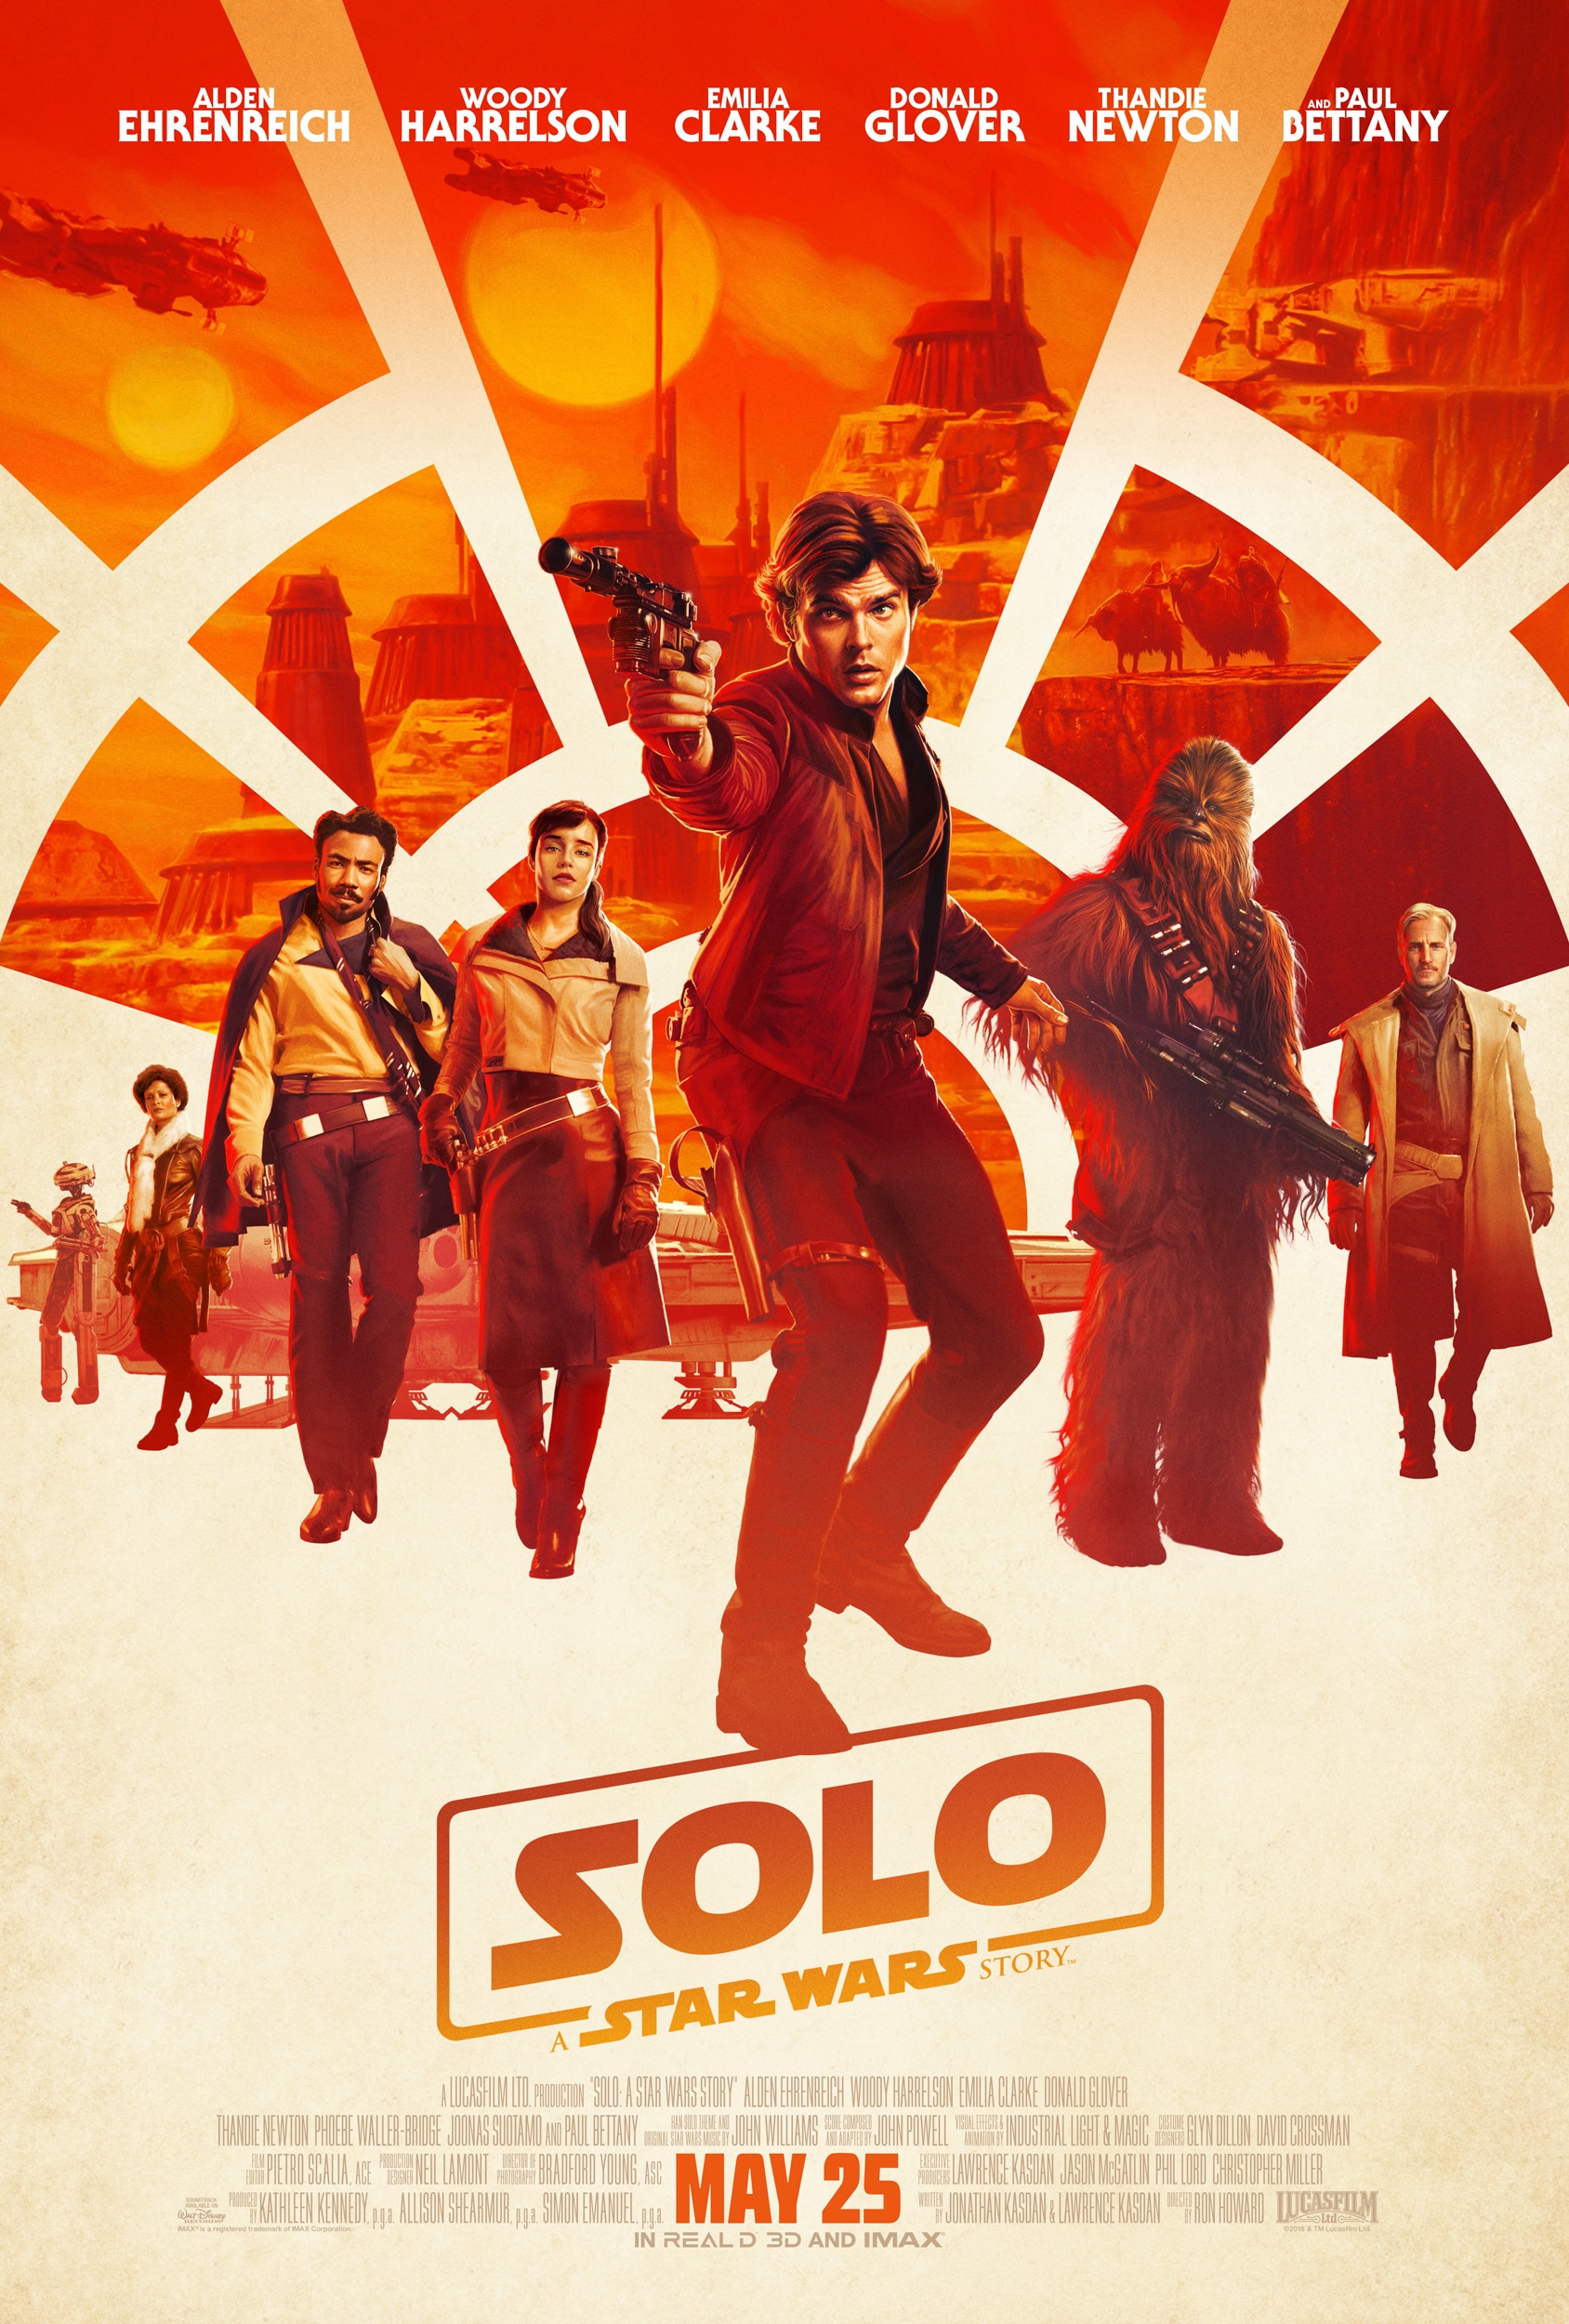 Board the Millennium Falcon at the Solo World Premiere! #HanSoloEvent #HanSolo